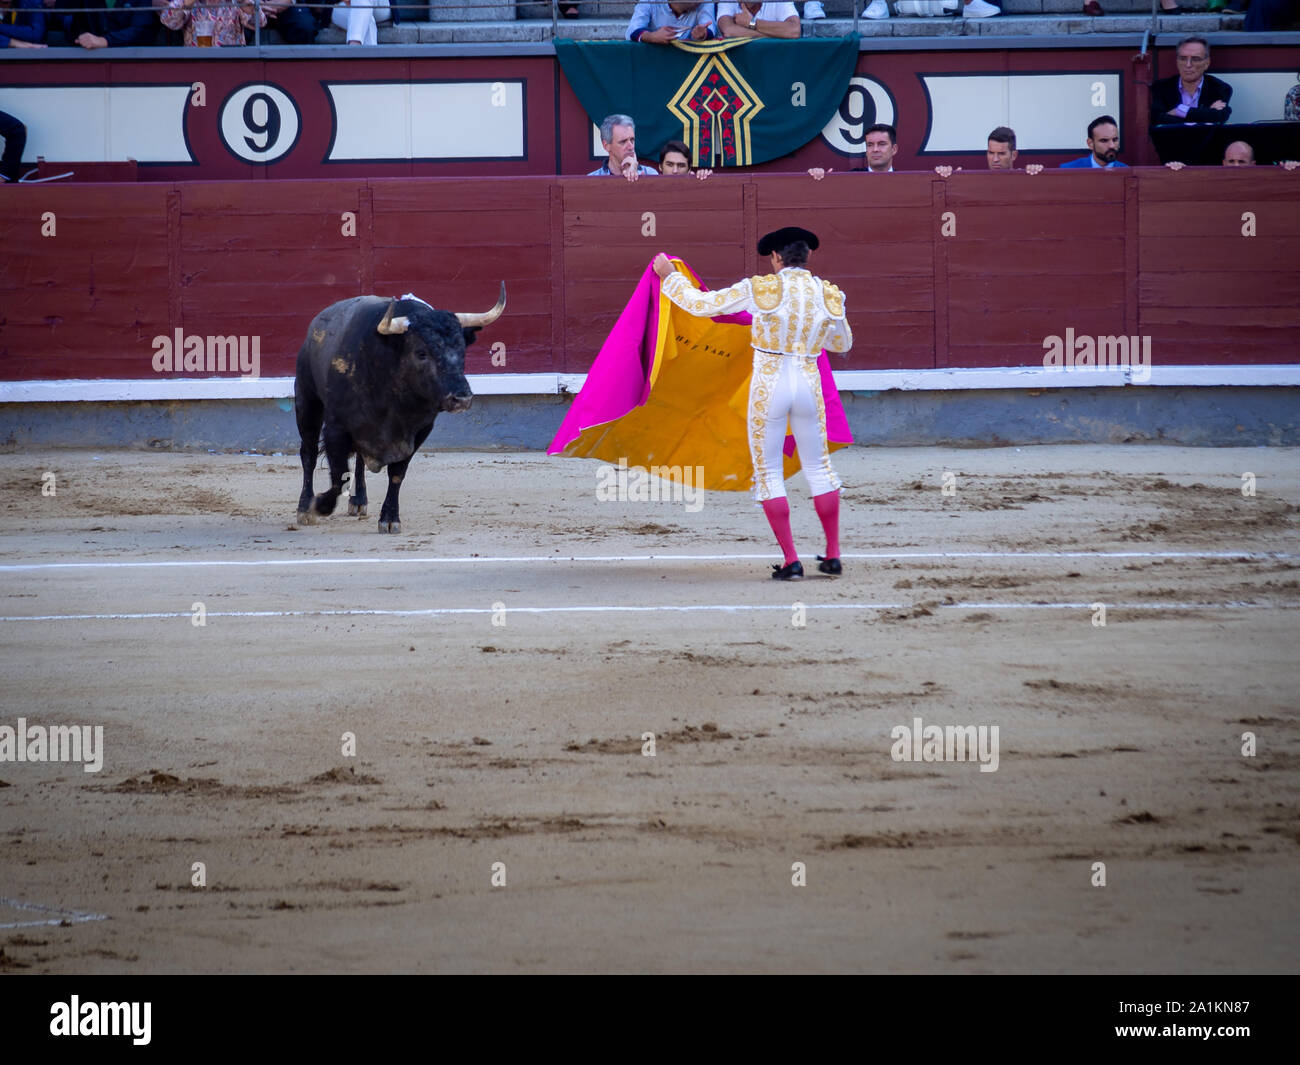 MADRID, España, 22 de septiembre de 2019: la primera etapa de la corrida de toros, el Tercio de varas ('parte de lanzas"). Matador y el toro en la plaza de toros de Foto de stock